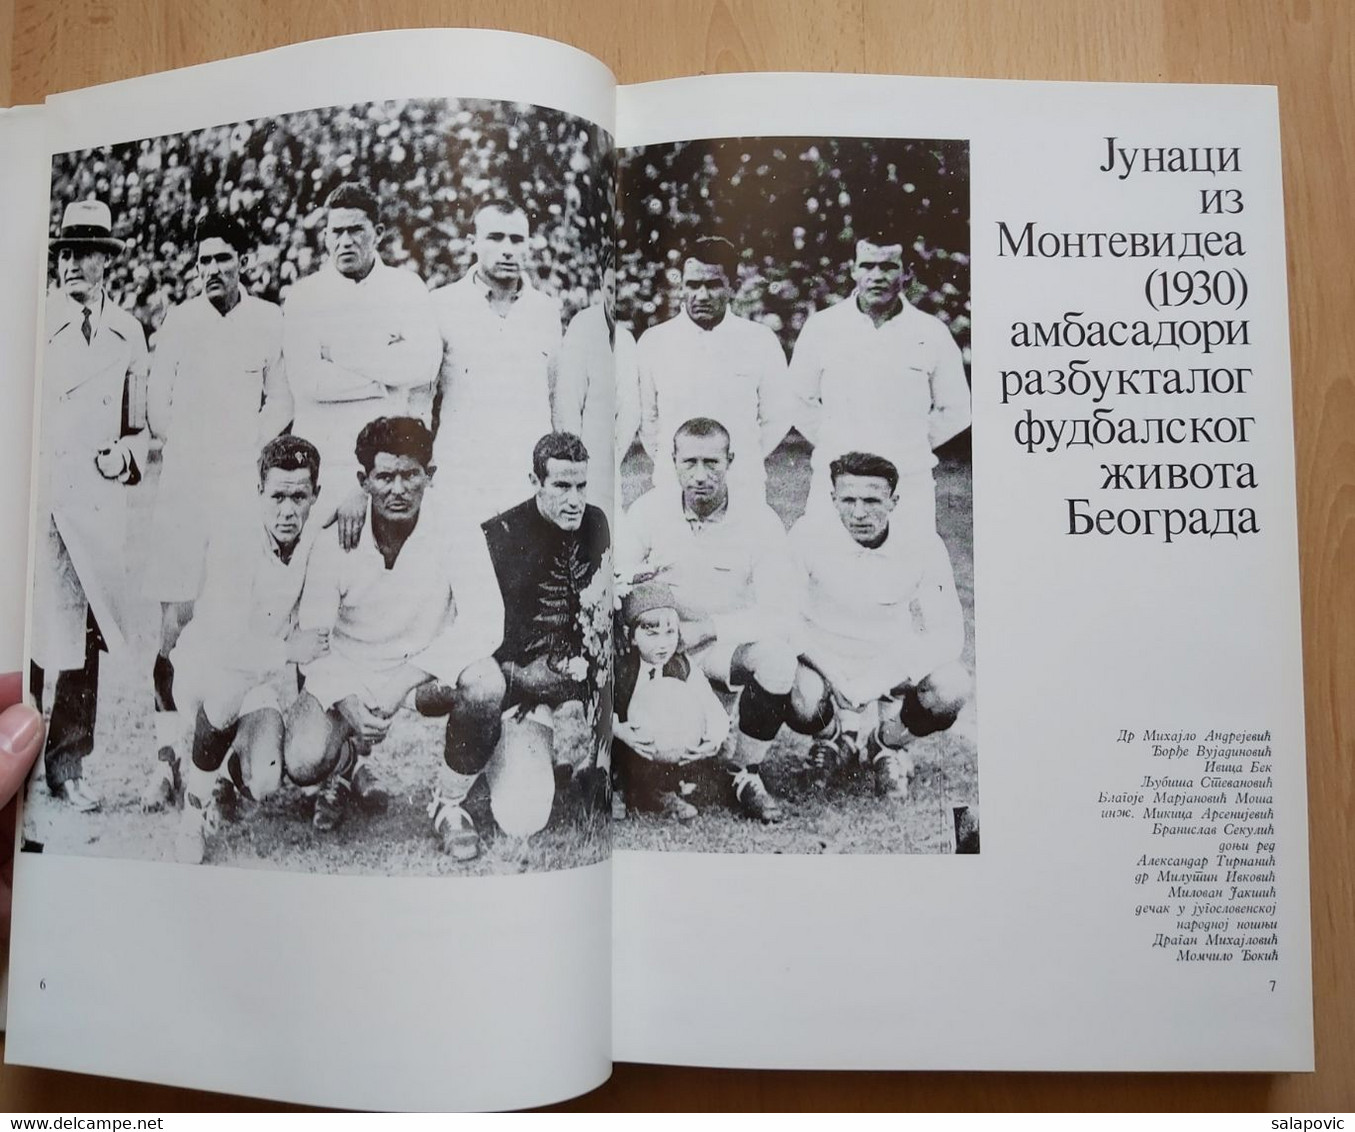 50 GODINA BFS, BEOGRADSKI FUDBALSKI SAVEZ  BELGRADE FOOTBALL ASSOCIATION, Jugoslavija - Books